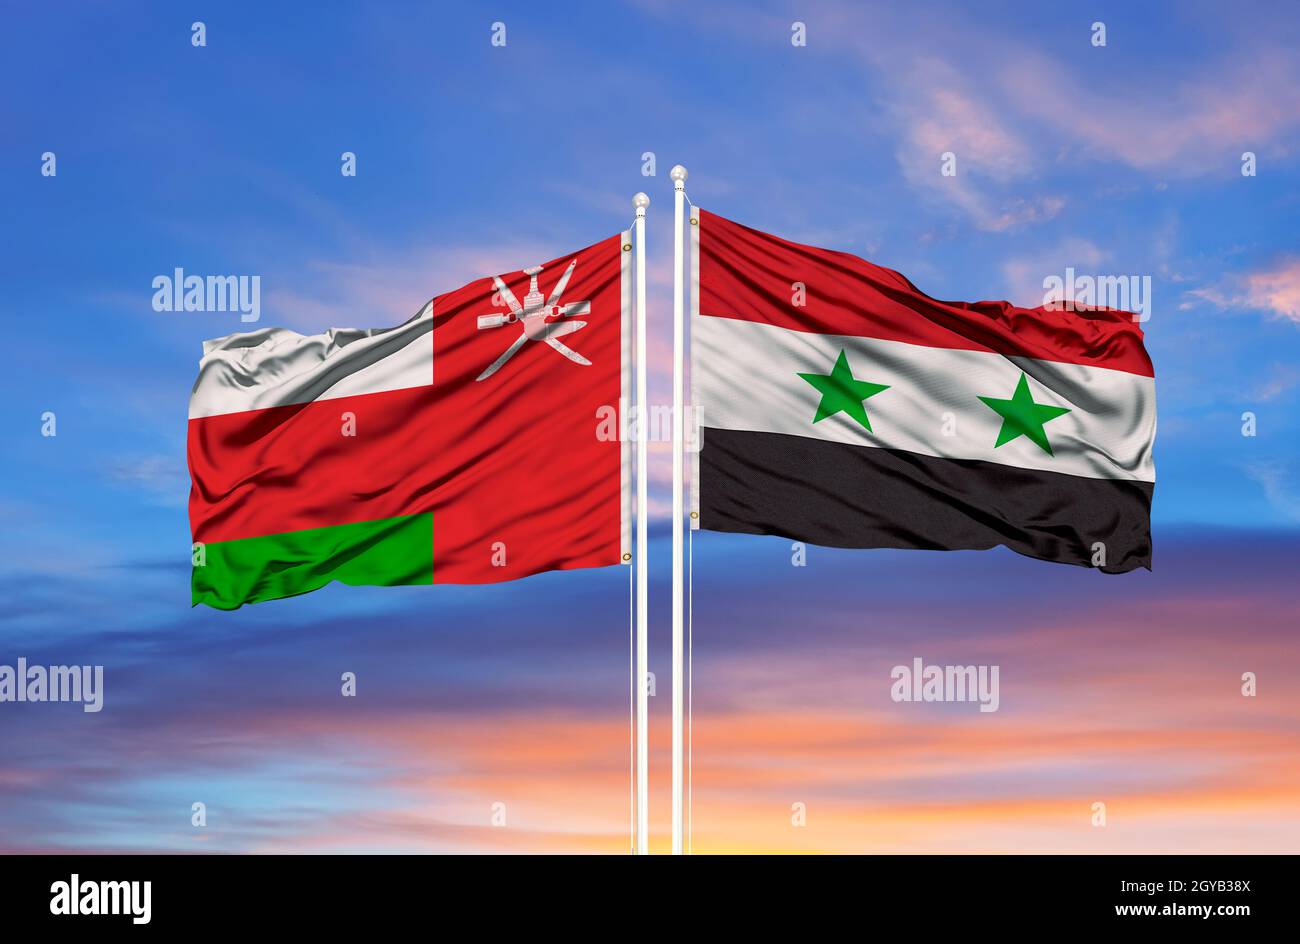 Bandiera dell'Oman e della Siria che sventolano nel vento contro il cielo blu nuvoloso bianco insieme. Concetto di diplomazia, relazioni internazionali Foto Stock